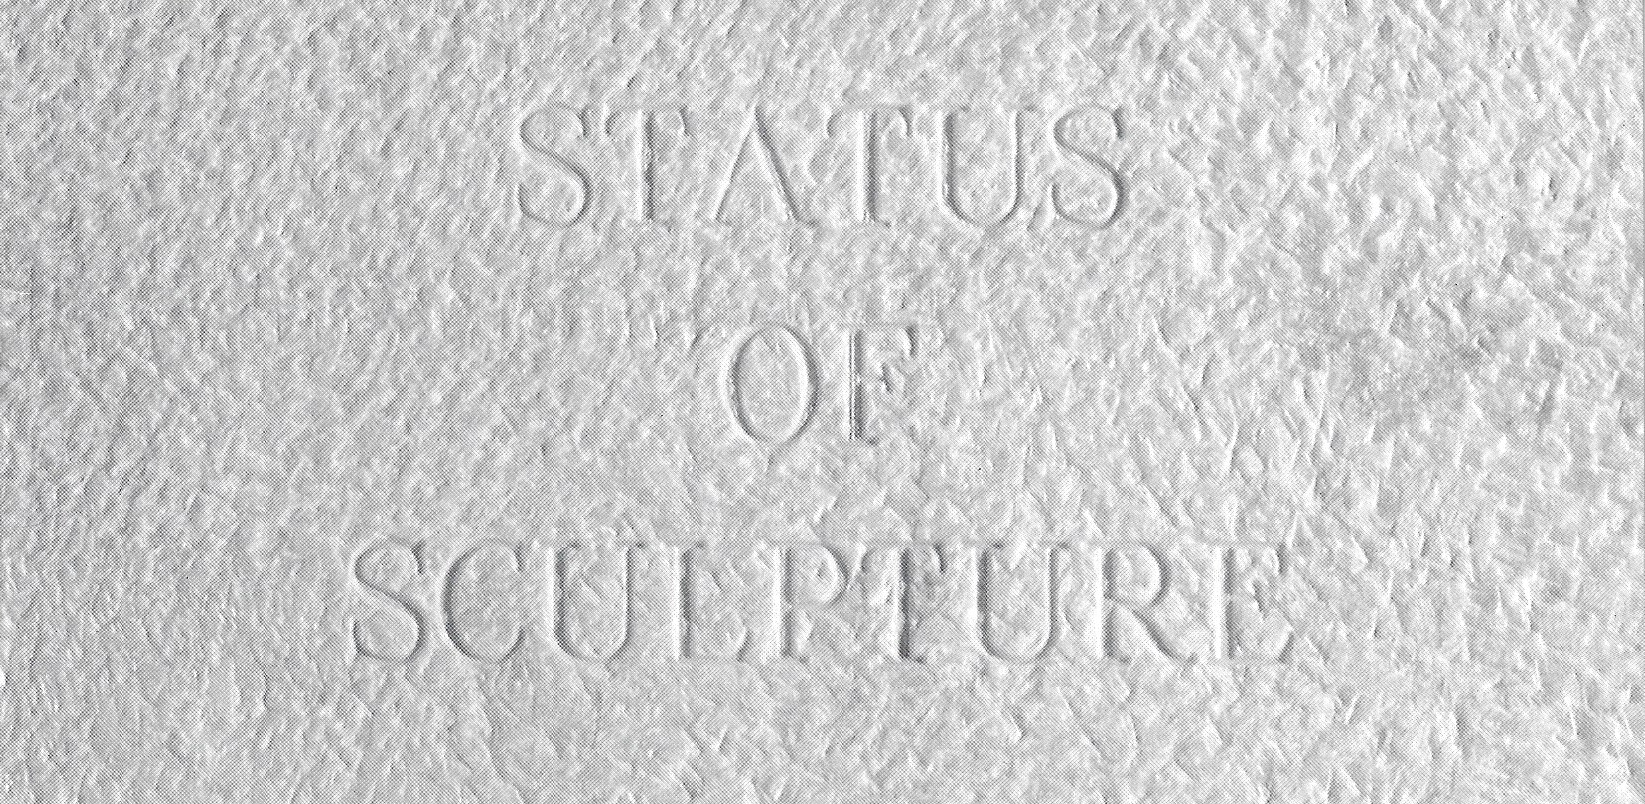 Status of Sculpture